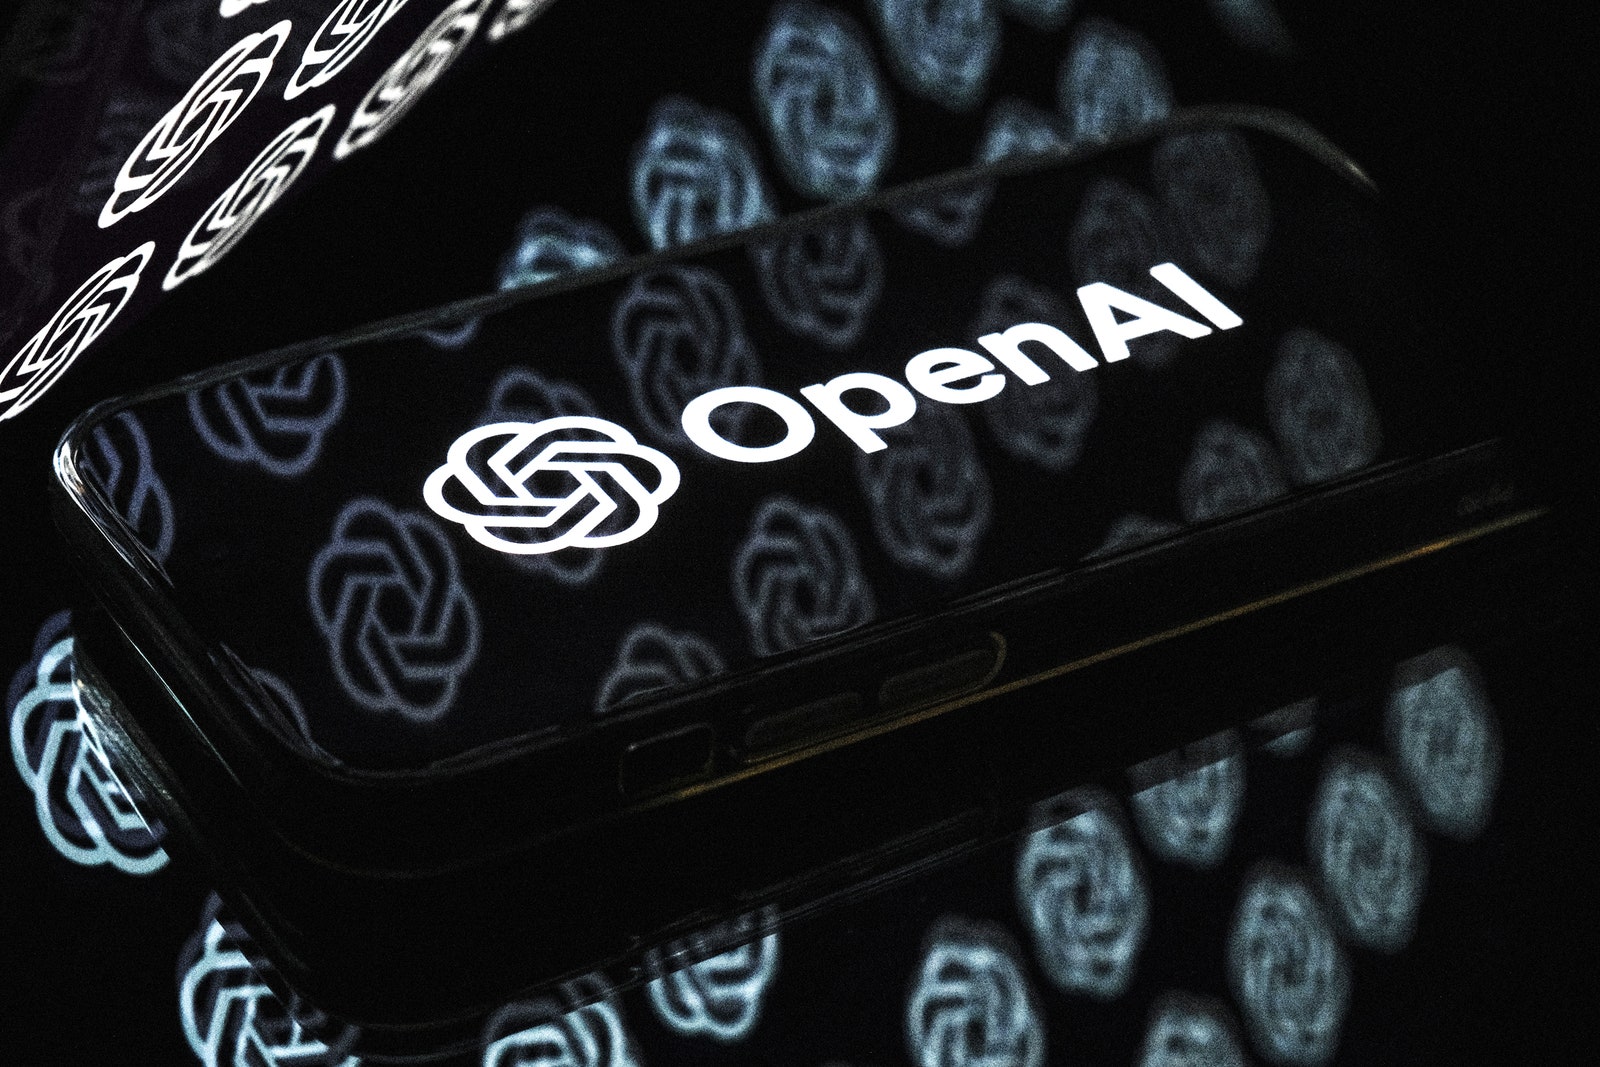 OpenAI社員ら、“リスク軽視と報復の文化”を公開書簡で警告